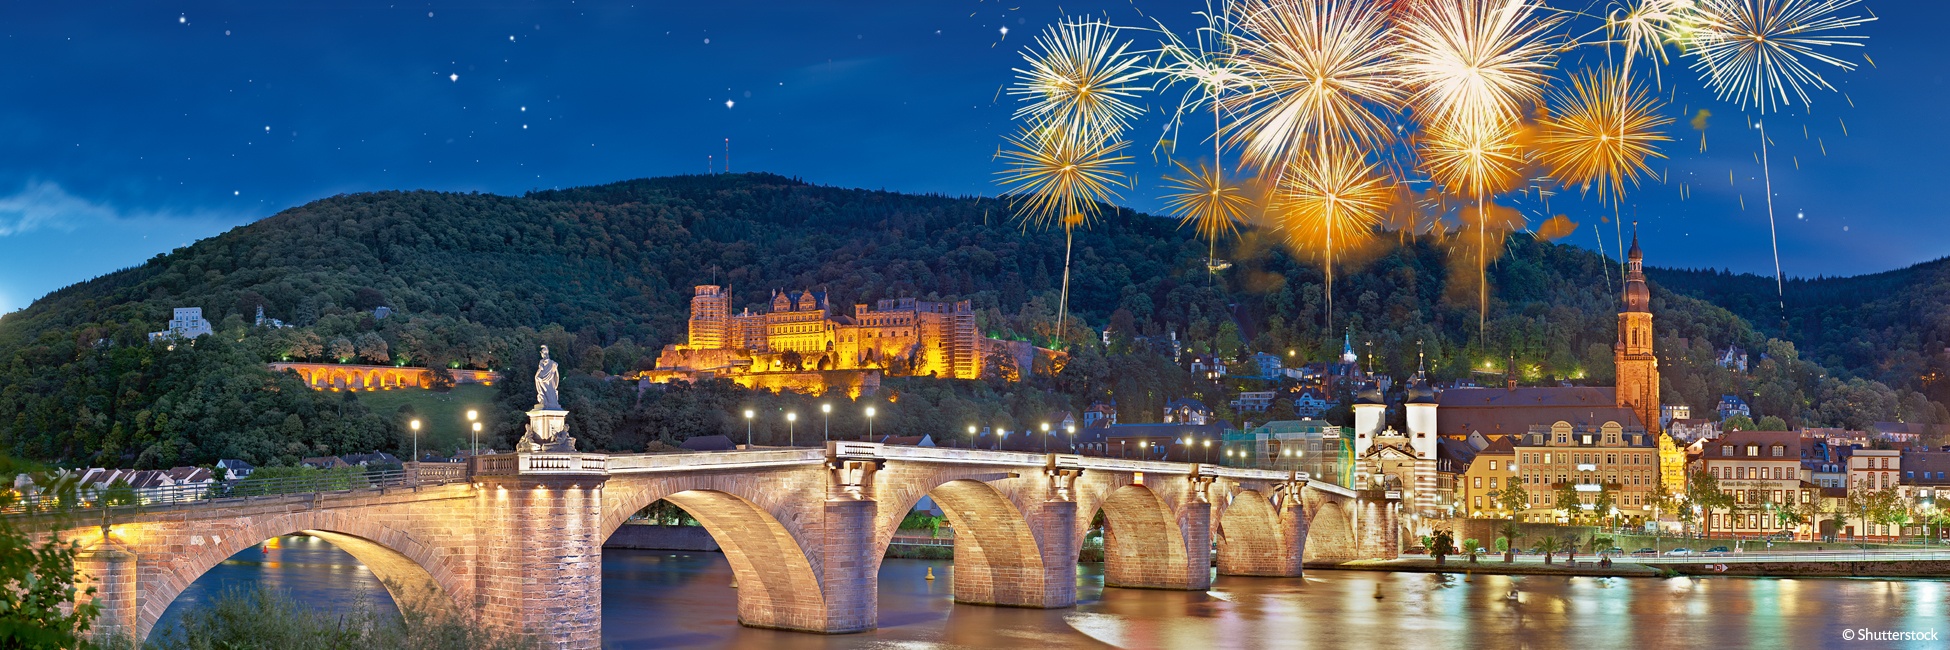 RES_PP - Año Nuevo en el valle del Rin romántico